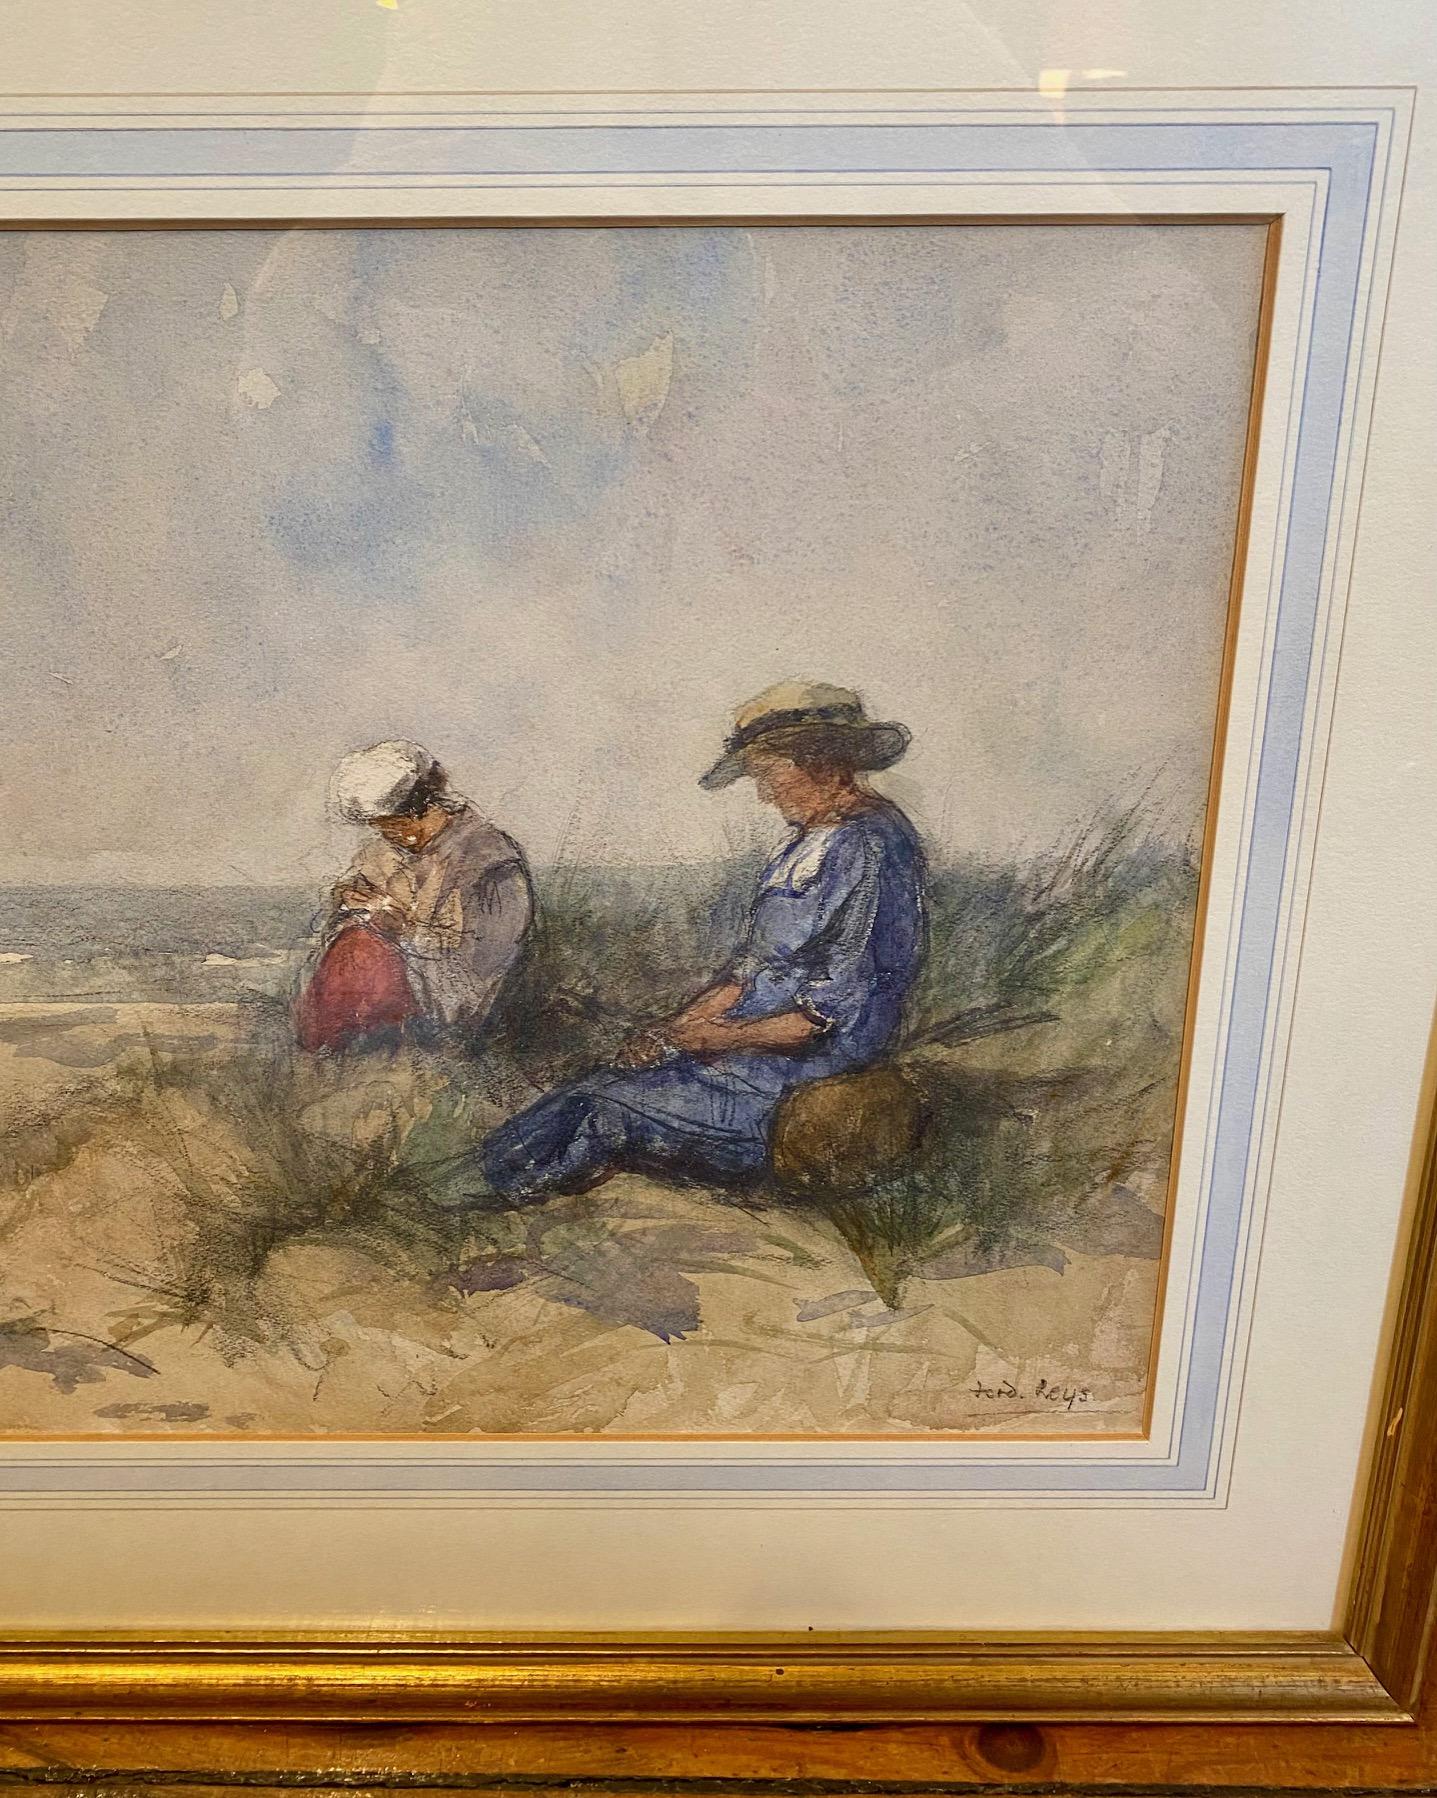 Aquarelle impressionniste Scène de rivage par Ferdinand Leys (Belge : 1873 -1960), circa 1920, une aquarelle originale sur papier peinte à la main vue impressionniste de deux figures féminines assises dans une dune de sable, avec l'océan calme